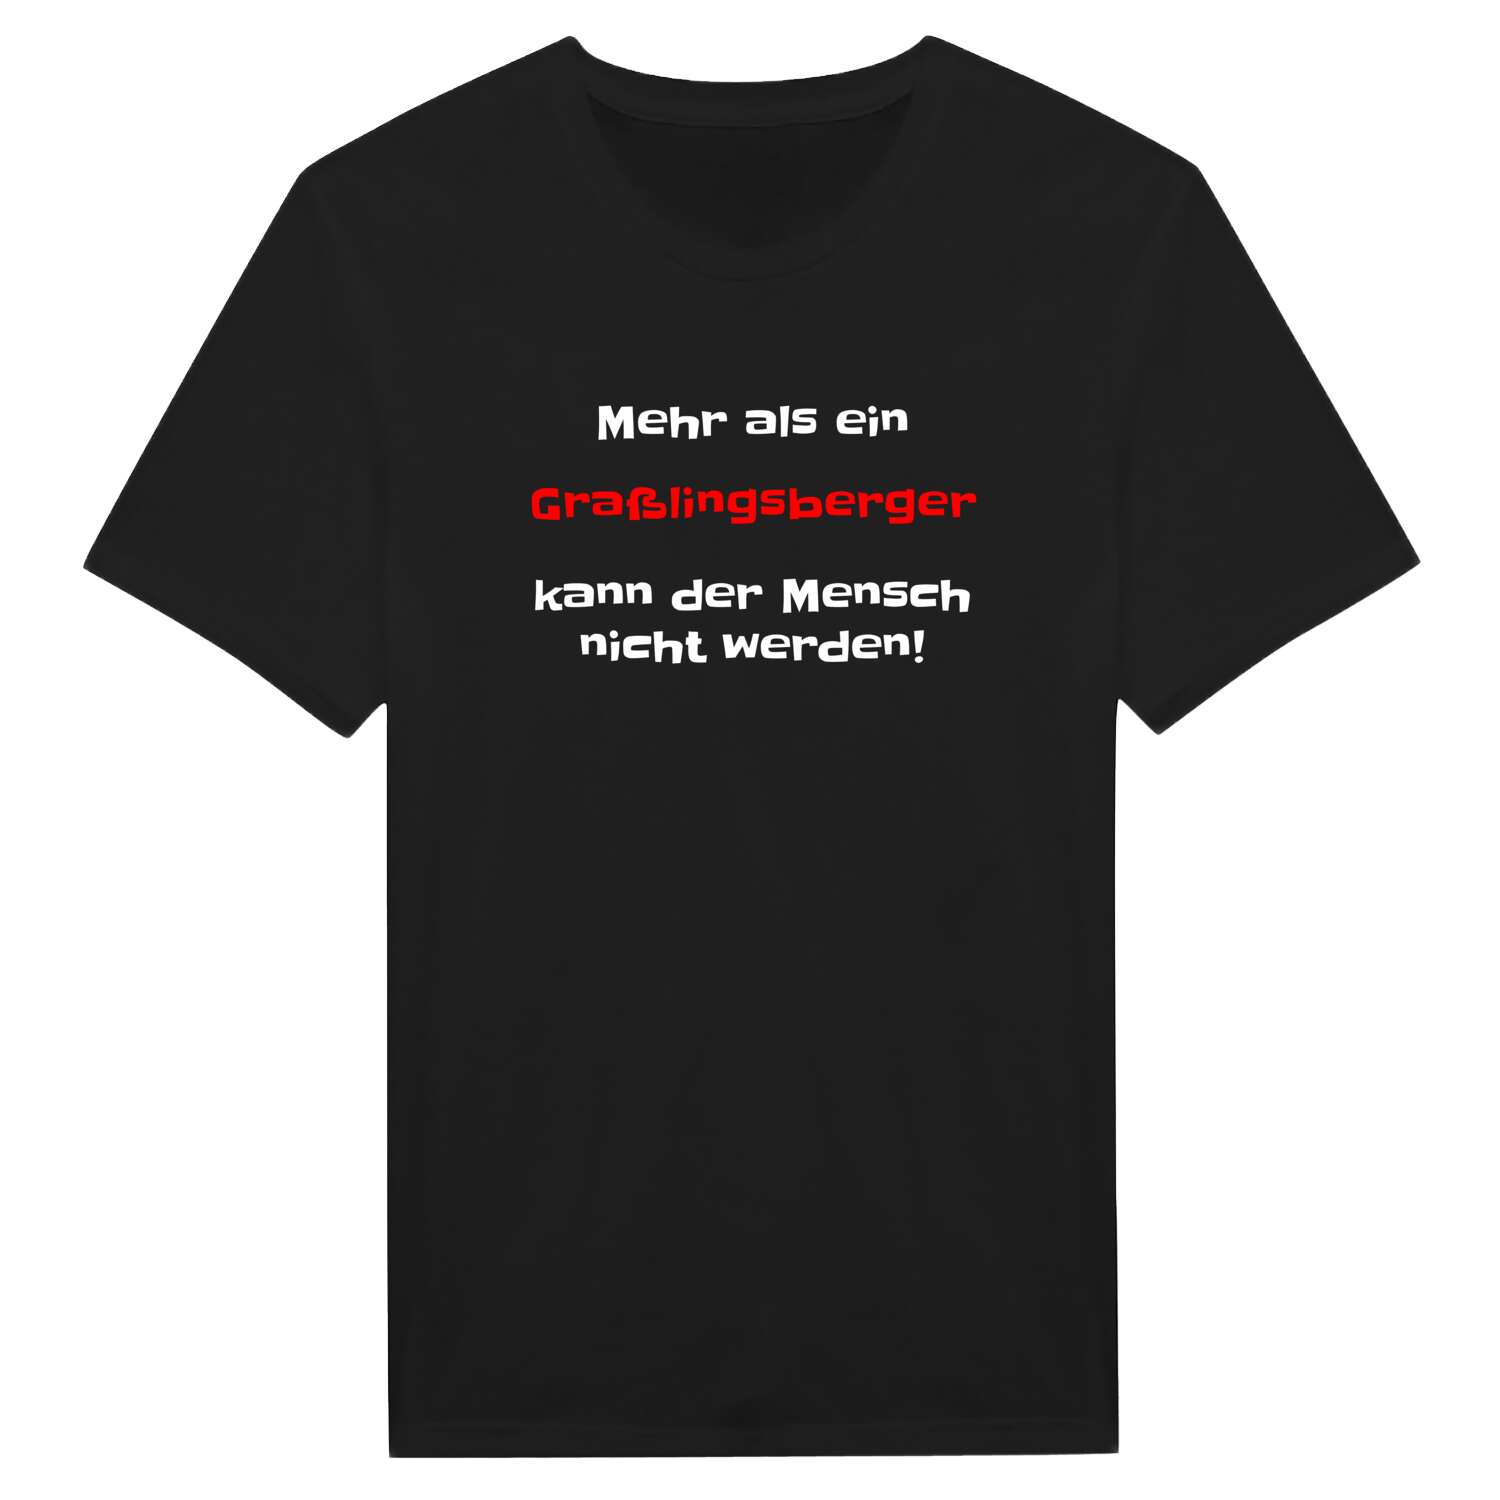 Graßlingsberg T-Shirt »Mehr als ein«